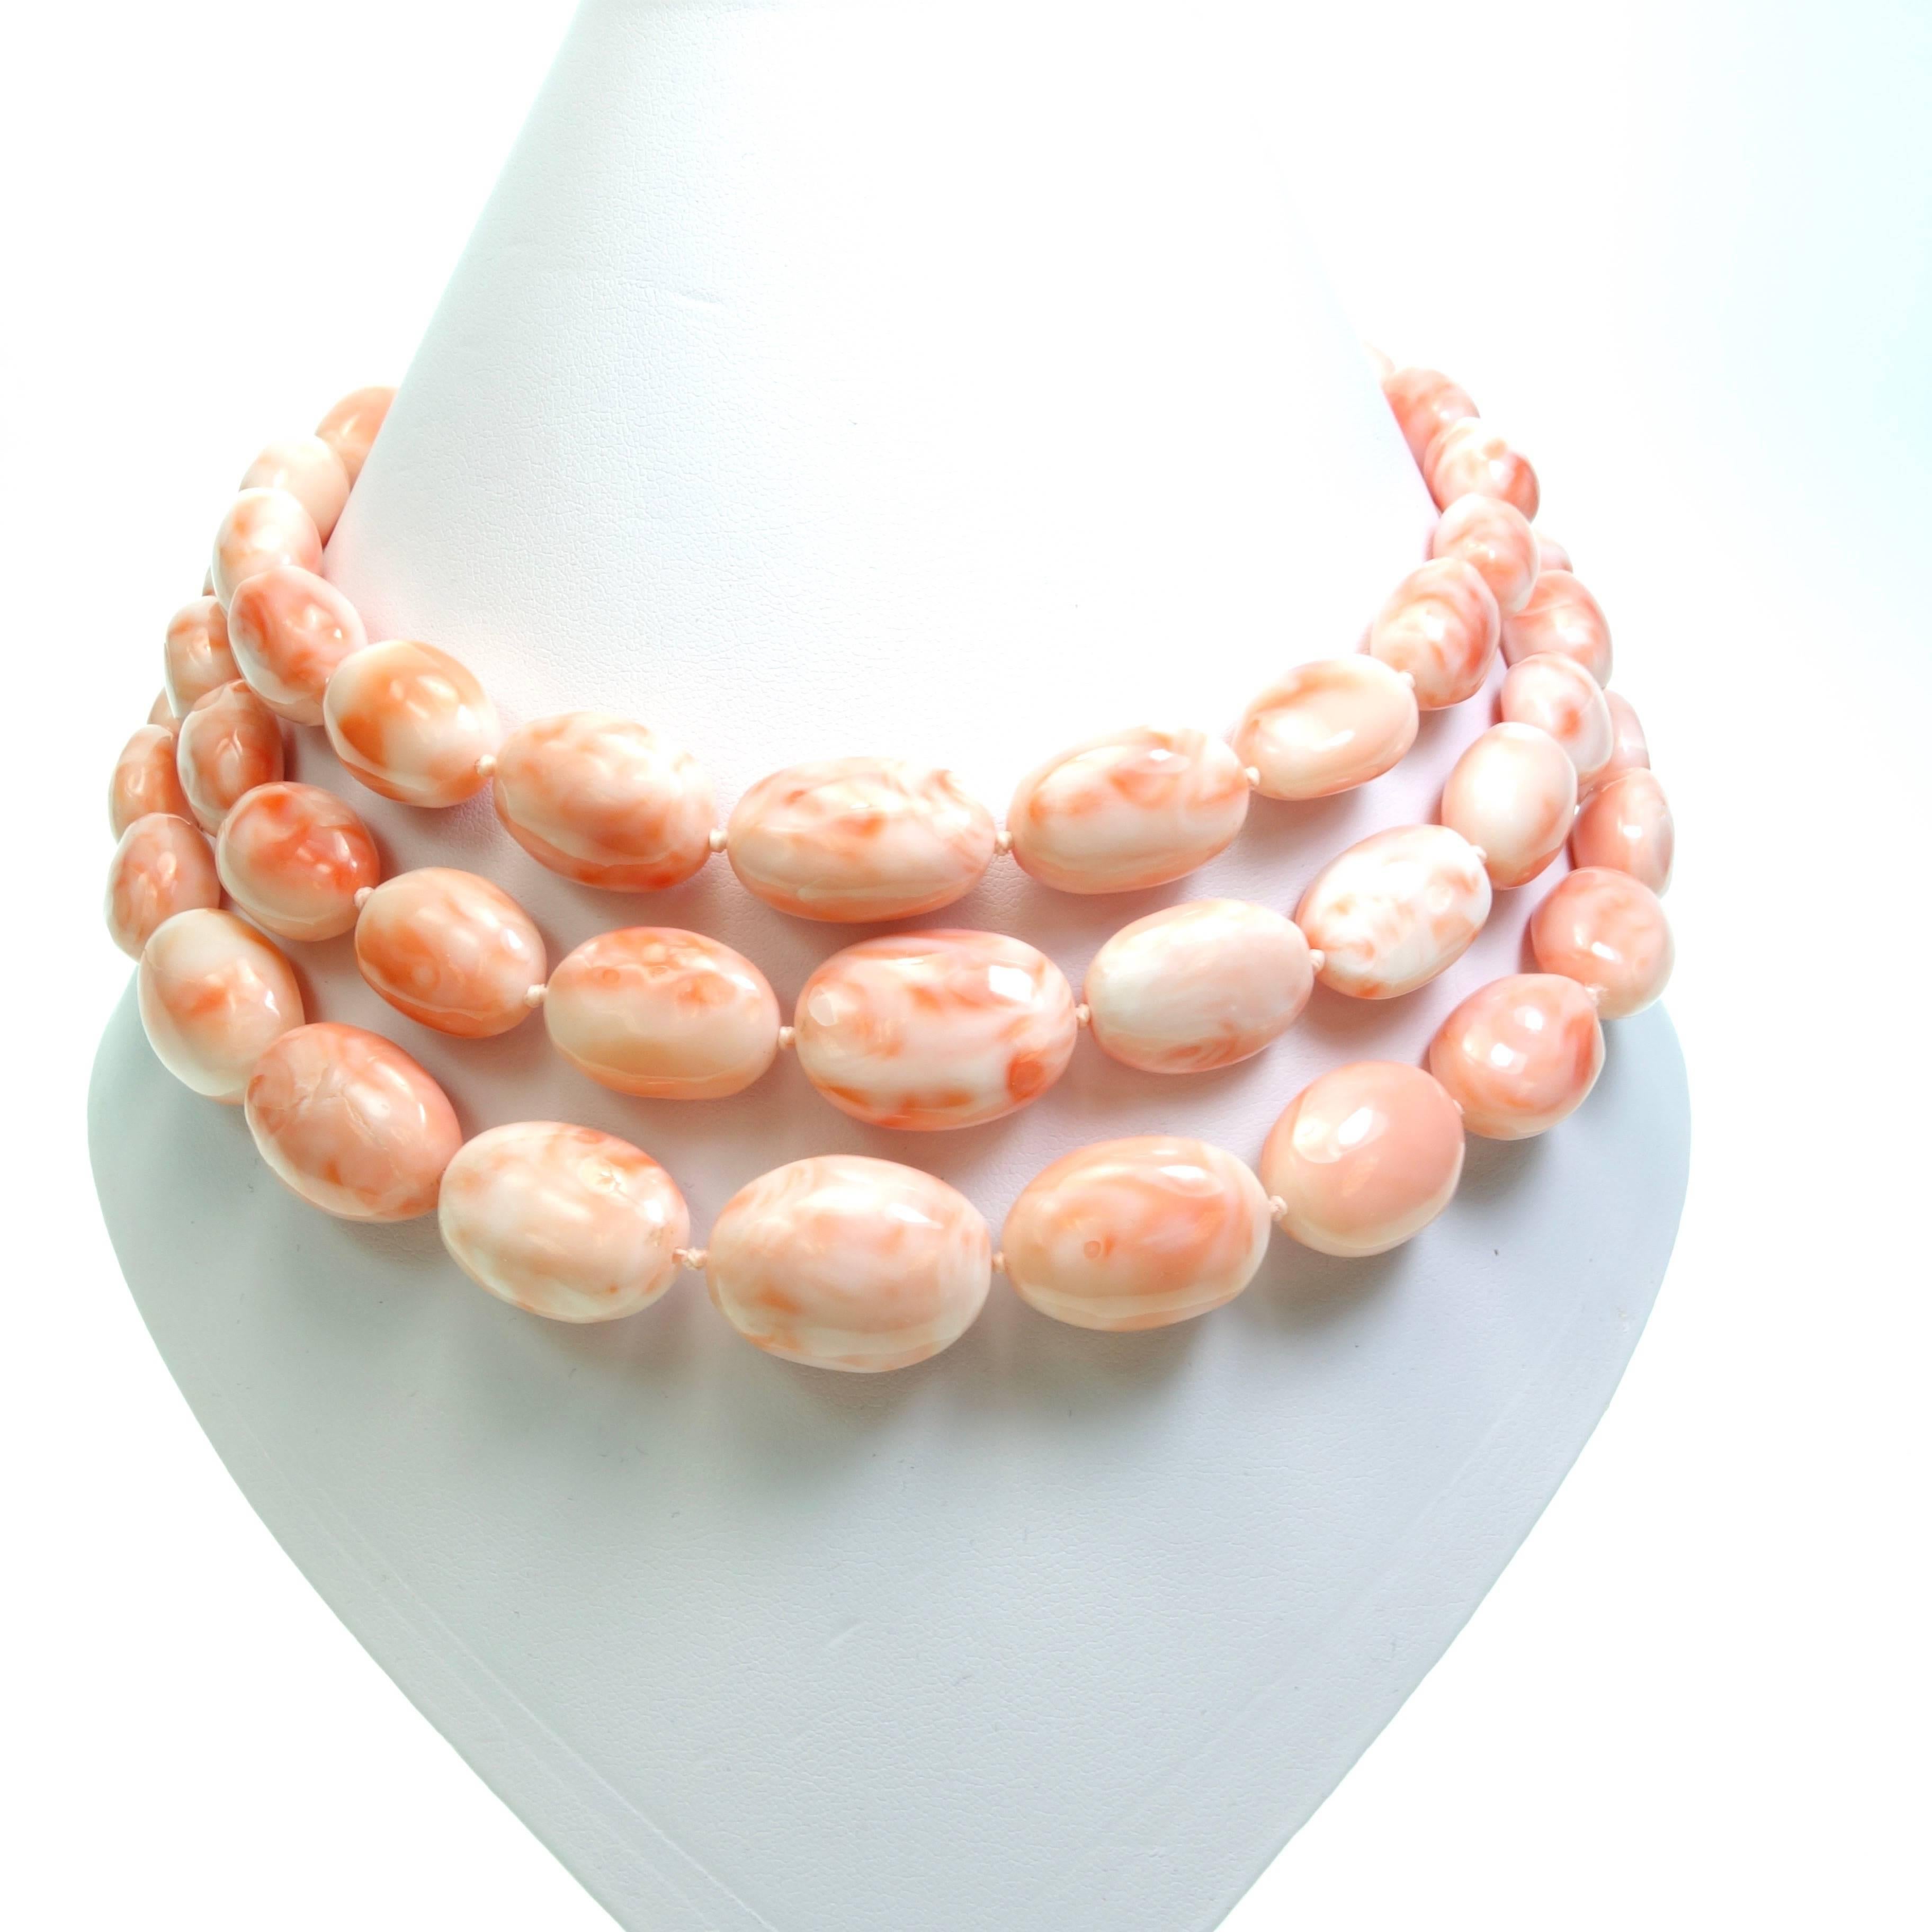 Women's Cristina Ferrare Triple Strand Salmon Coral Beads Necklace For Sale